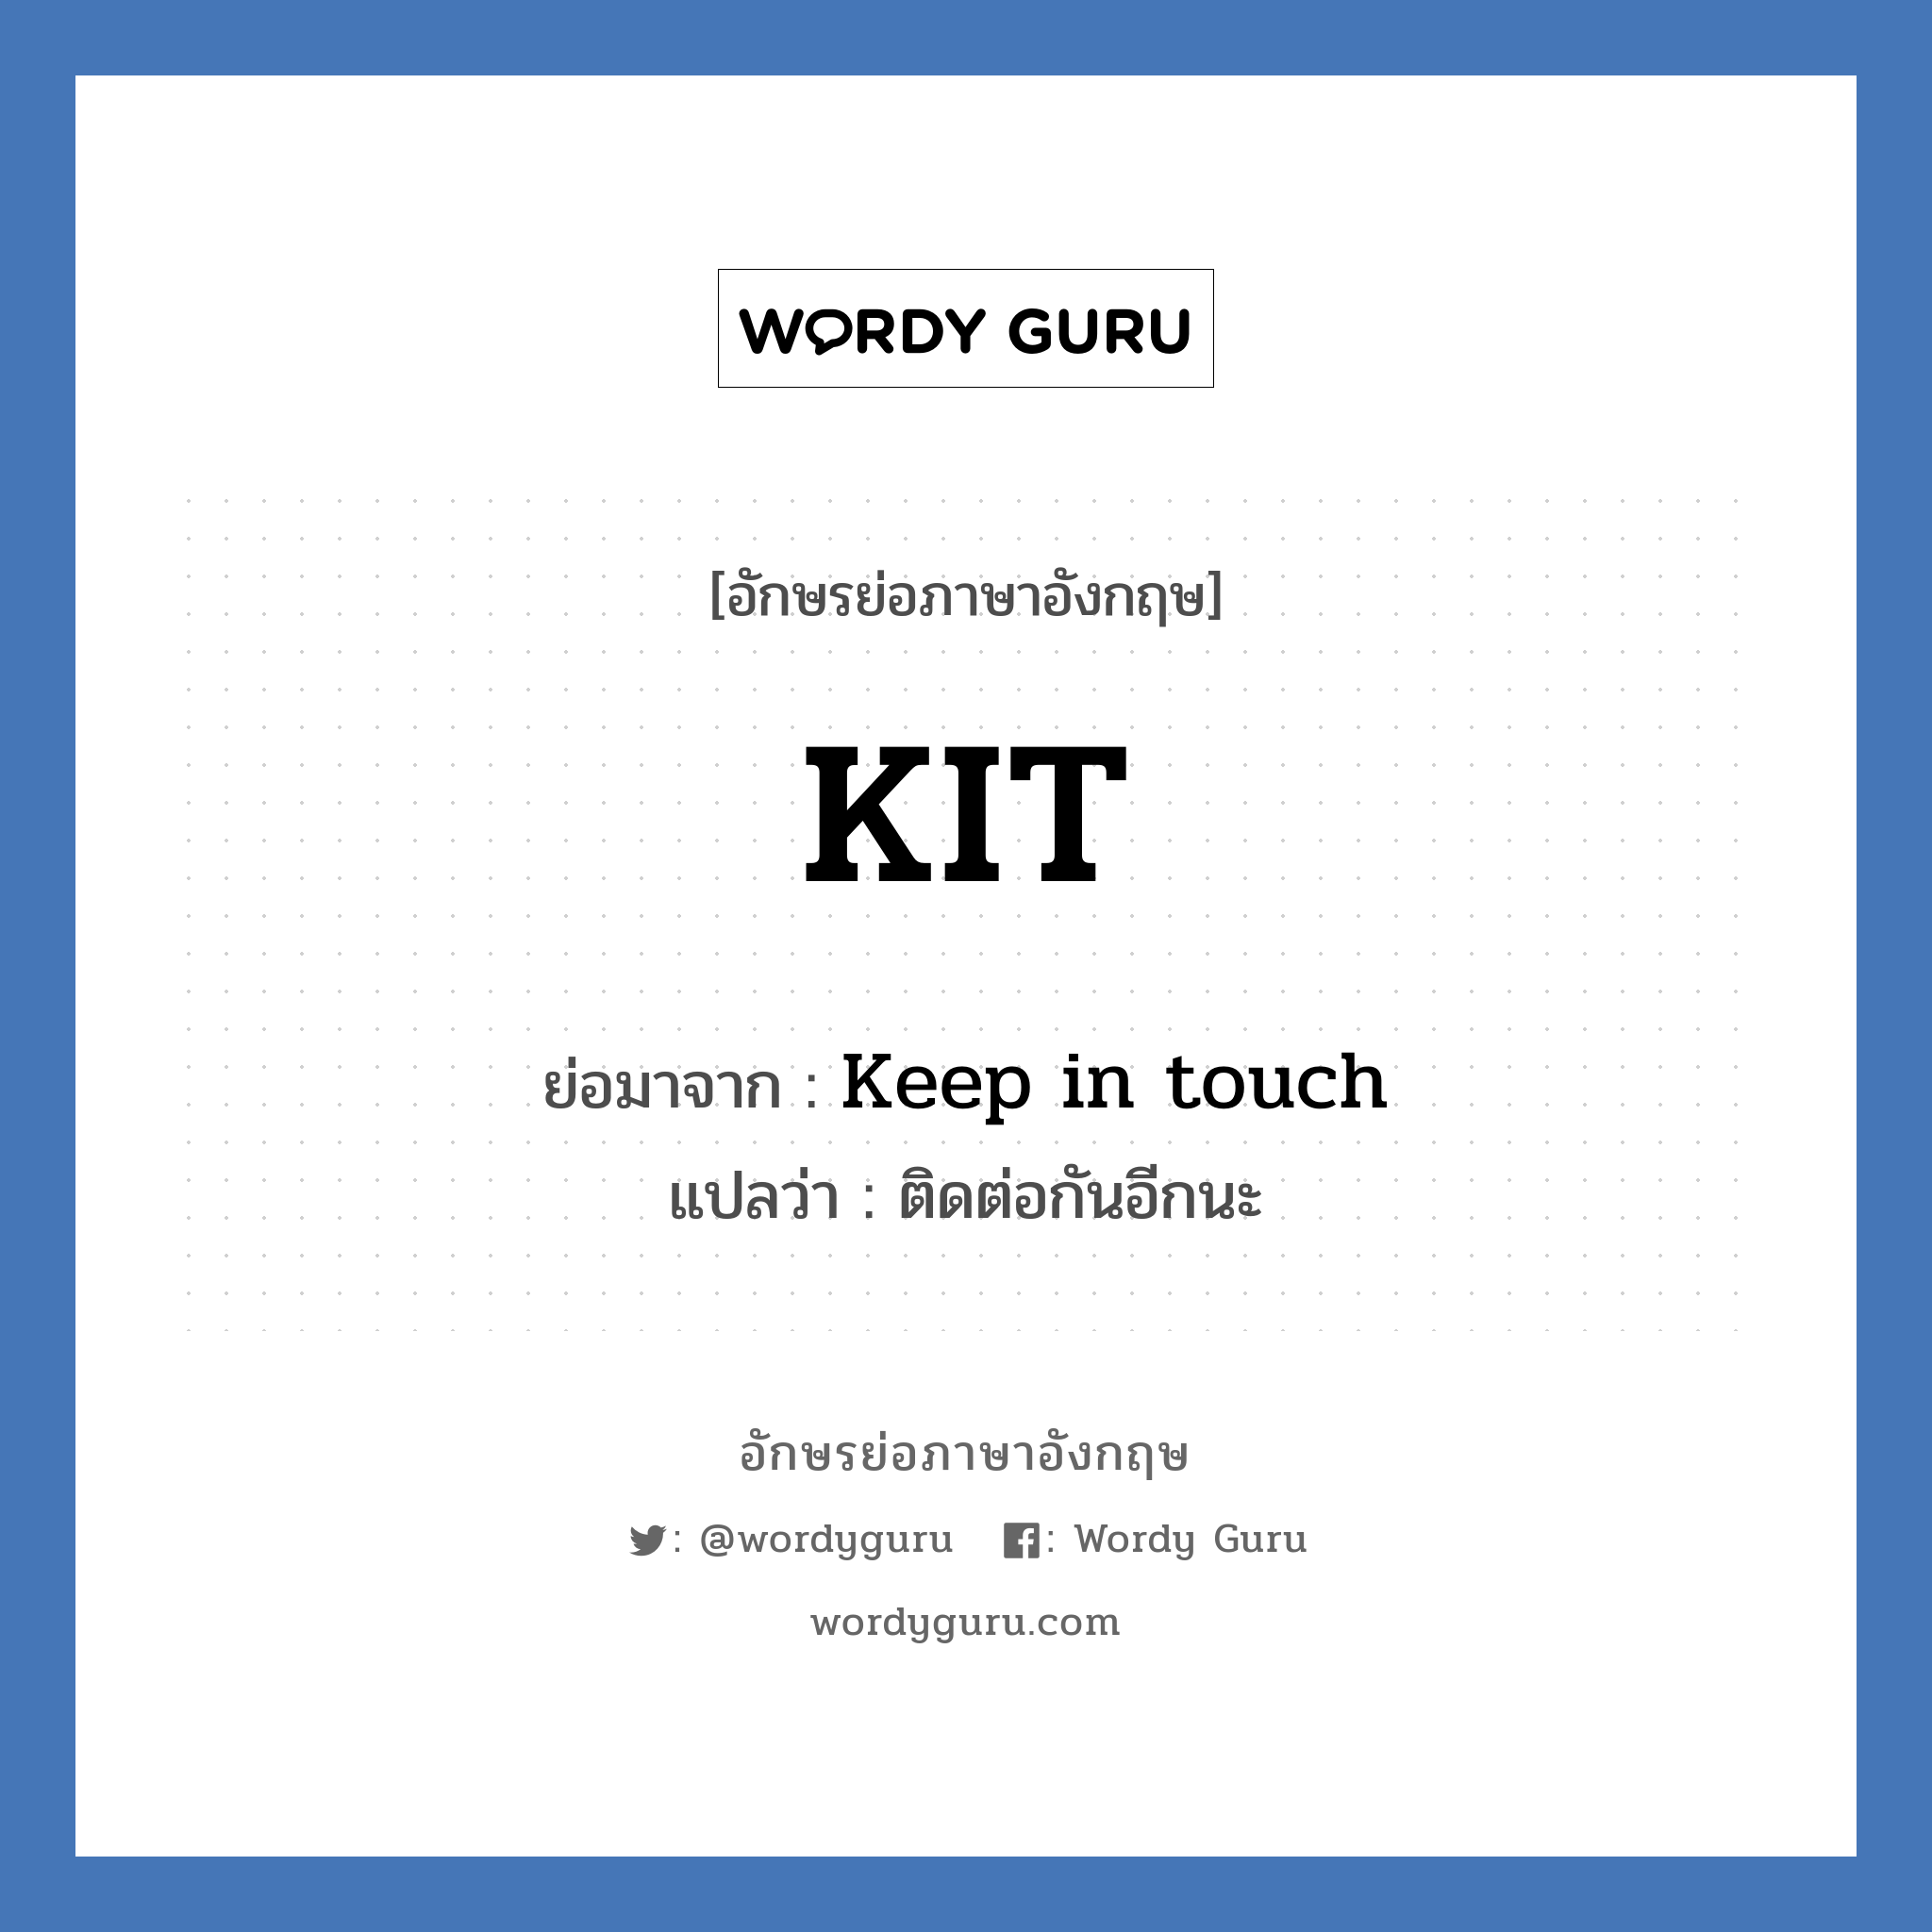 Keep in touch คำย่อคือ? แปลว่า?, อักษรย่อภาษาอังกฤษ Keep in touch ย่อมาจาก KIT แปลว่า ติดต่อกันอีกนะ